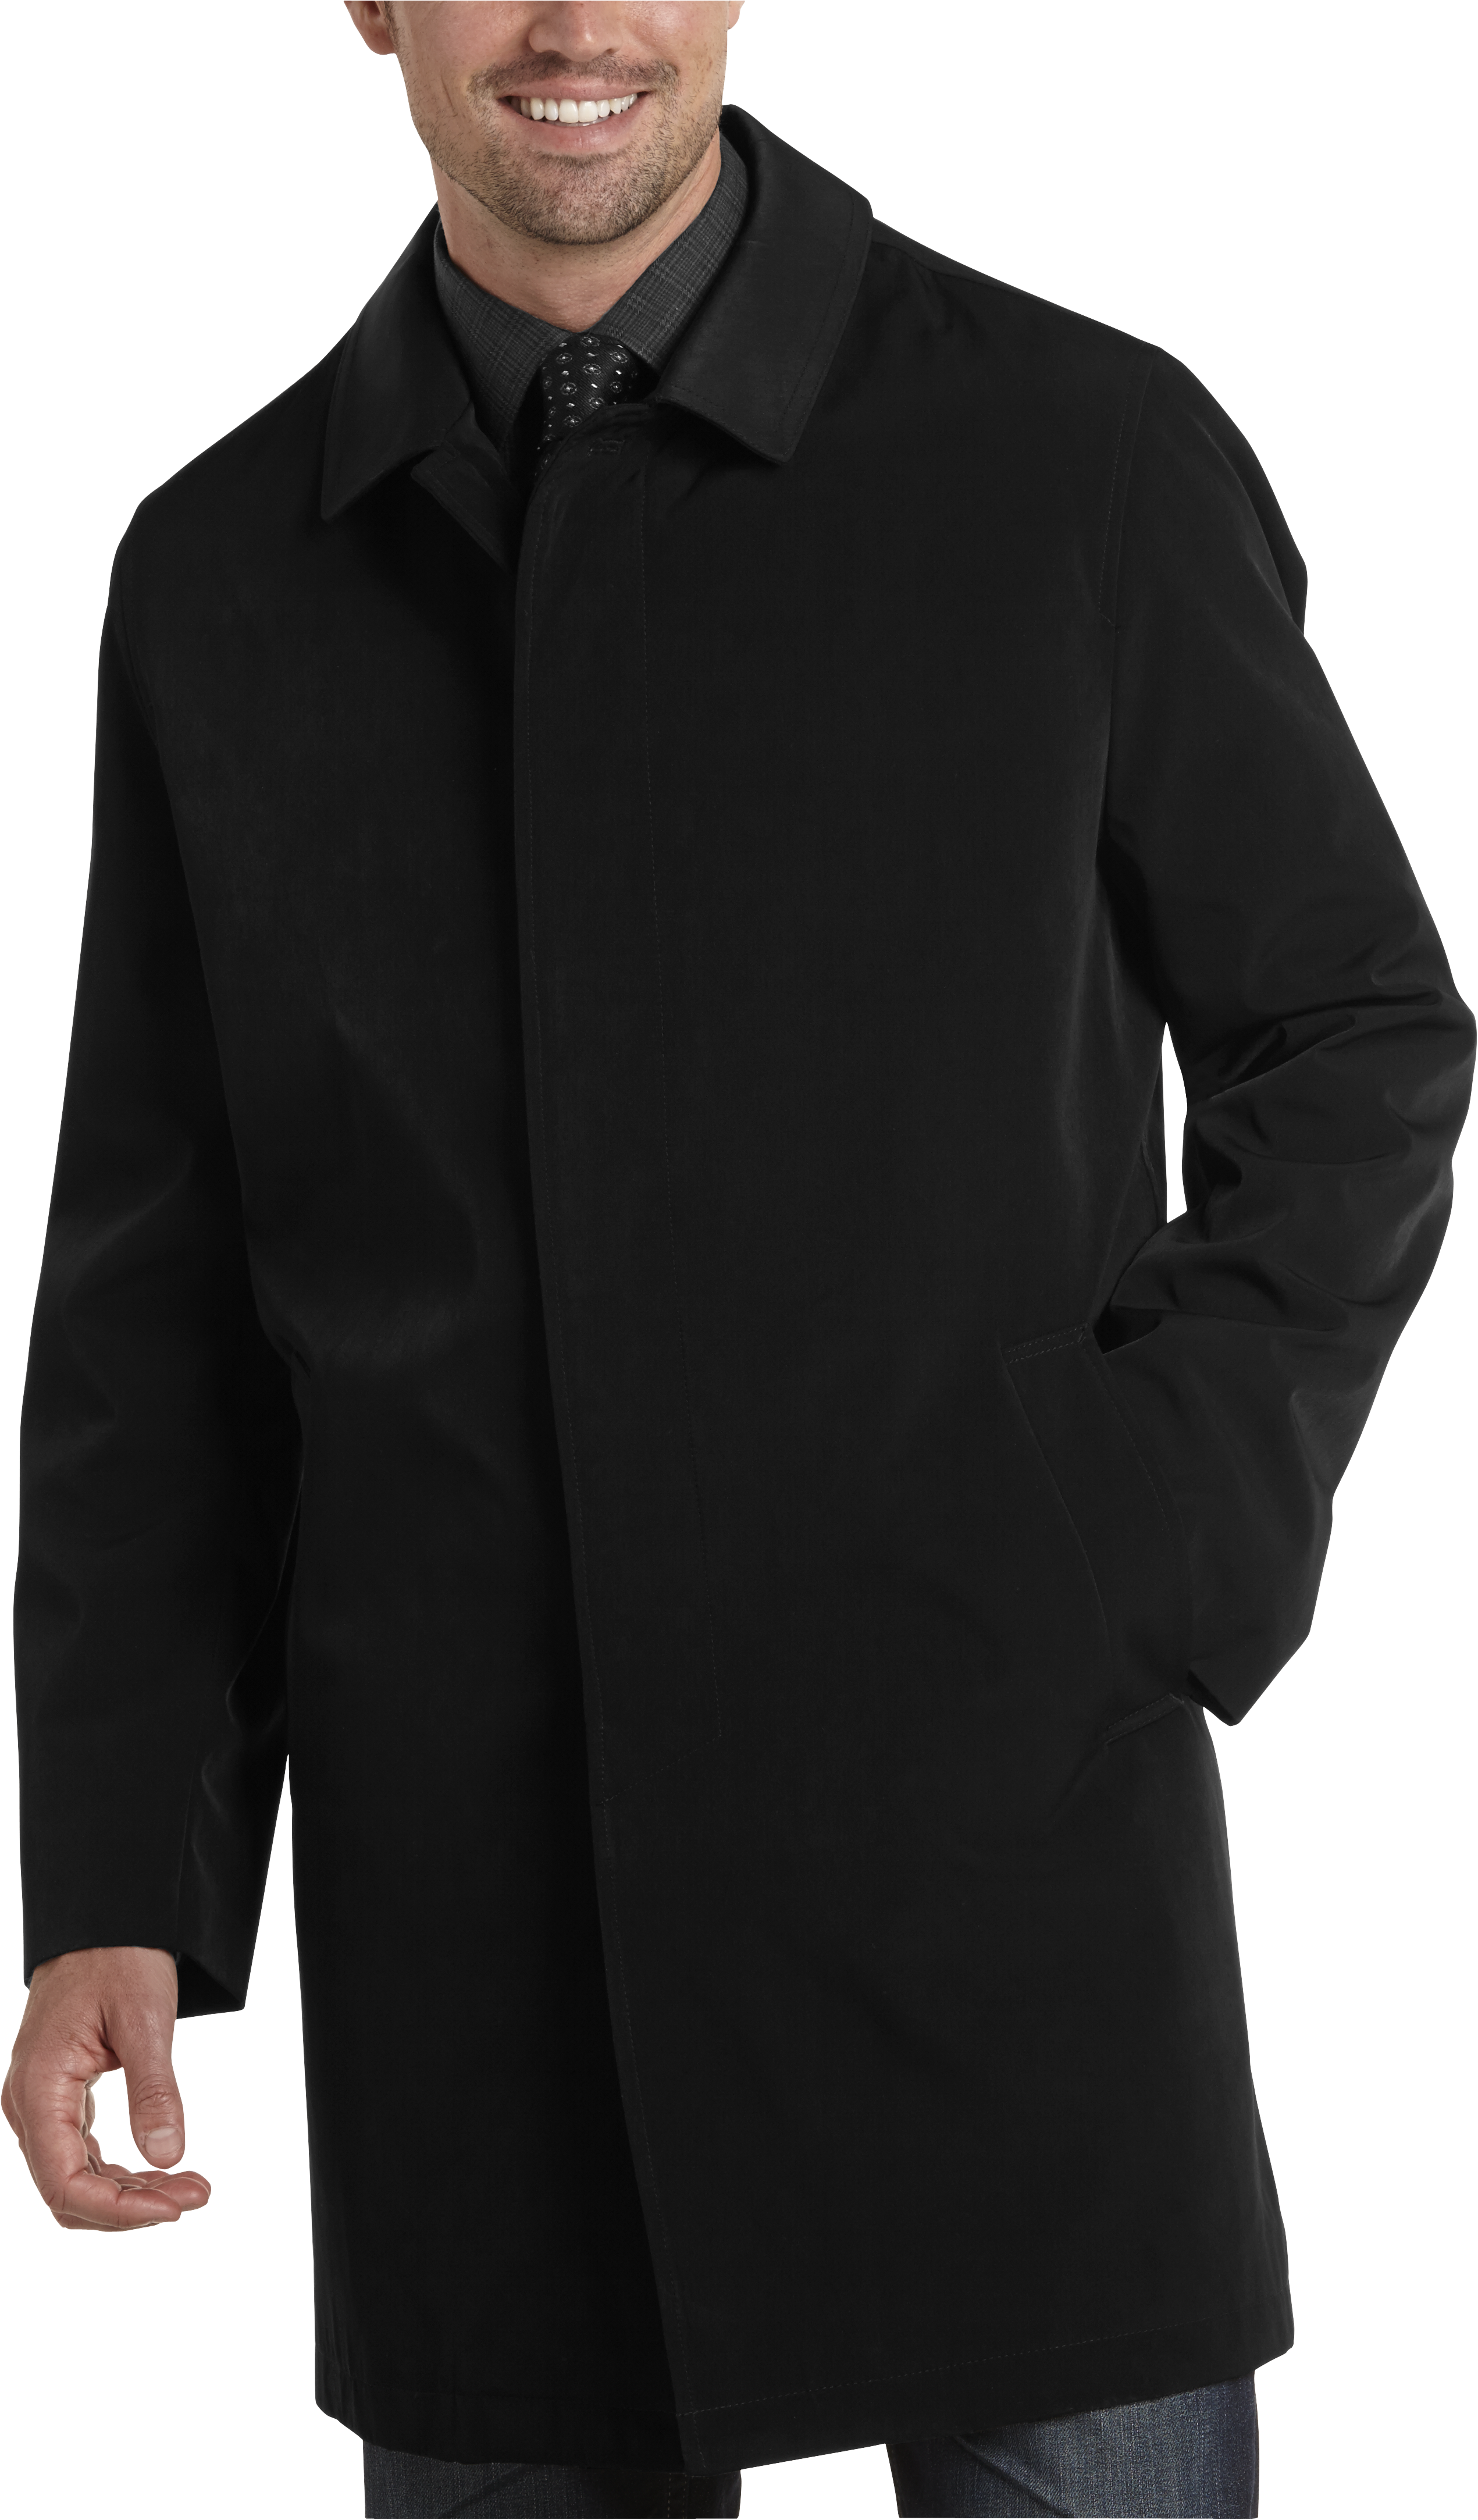 Joseph Abboud Black Classic Fit Raincoat - Men's Raincoats | Men's ...